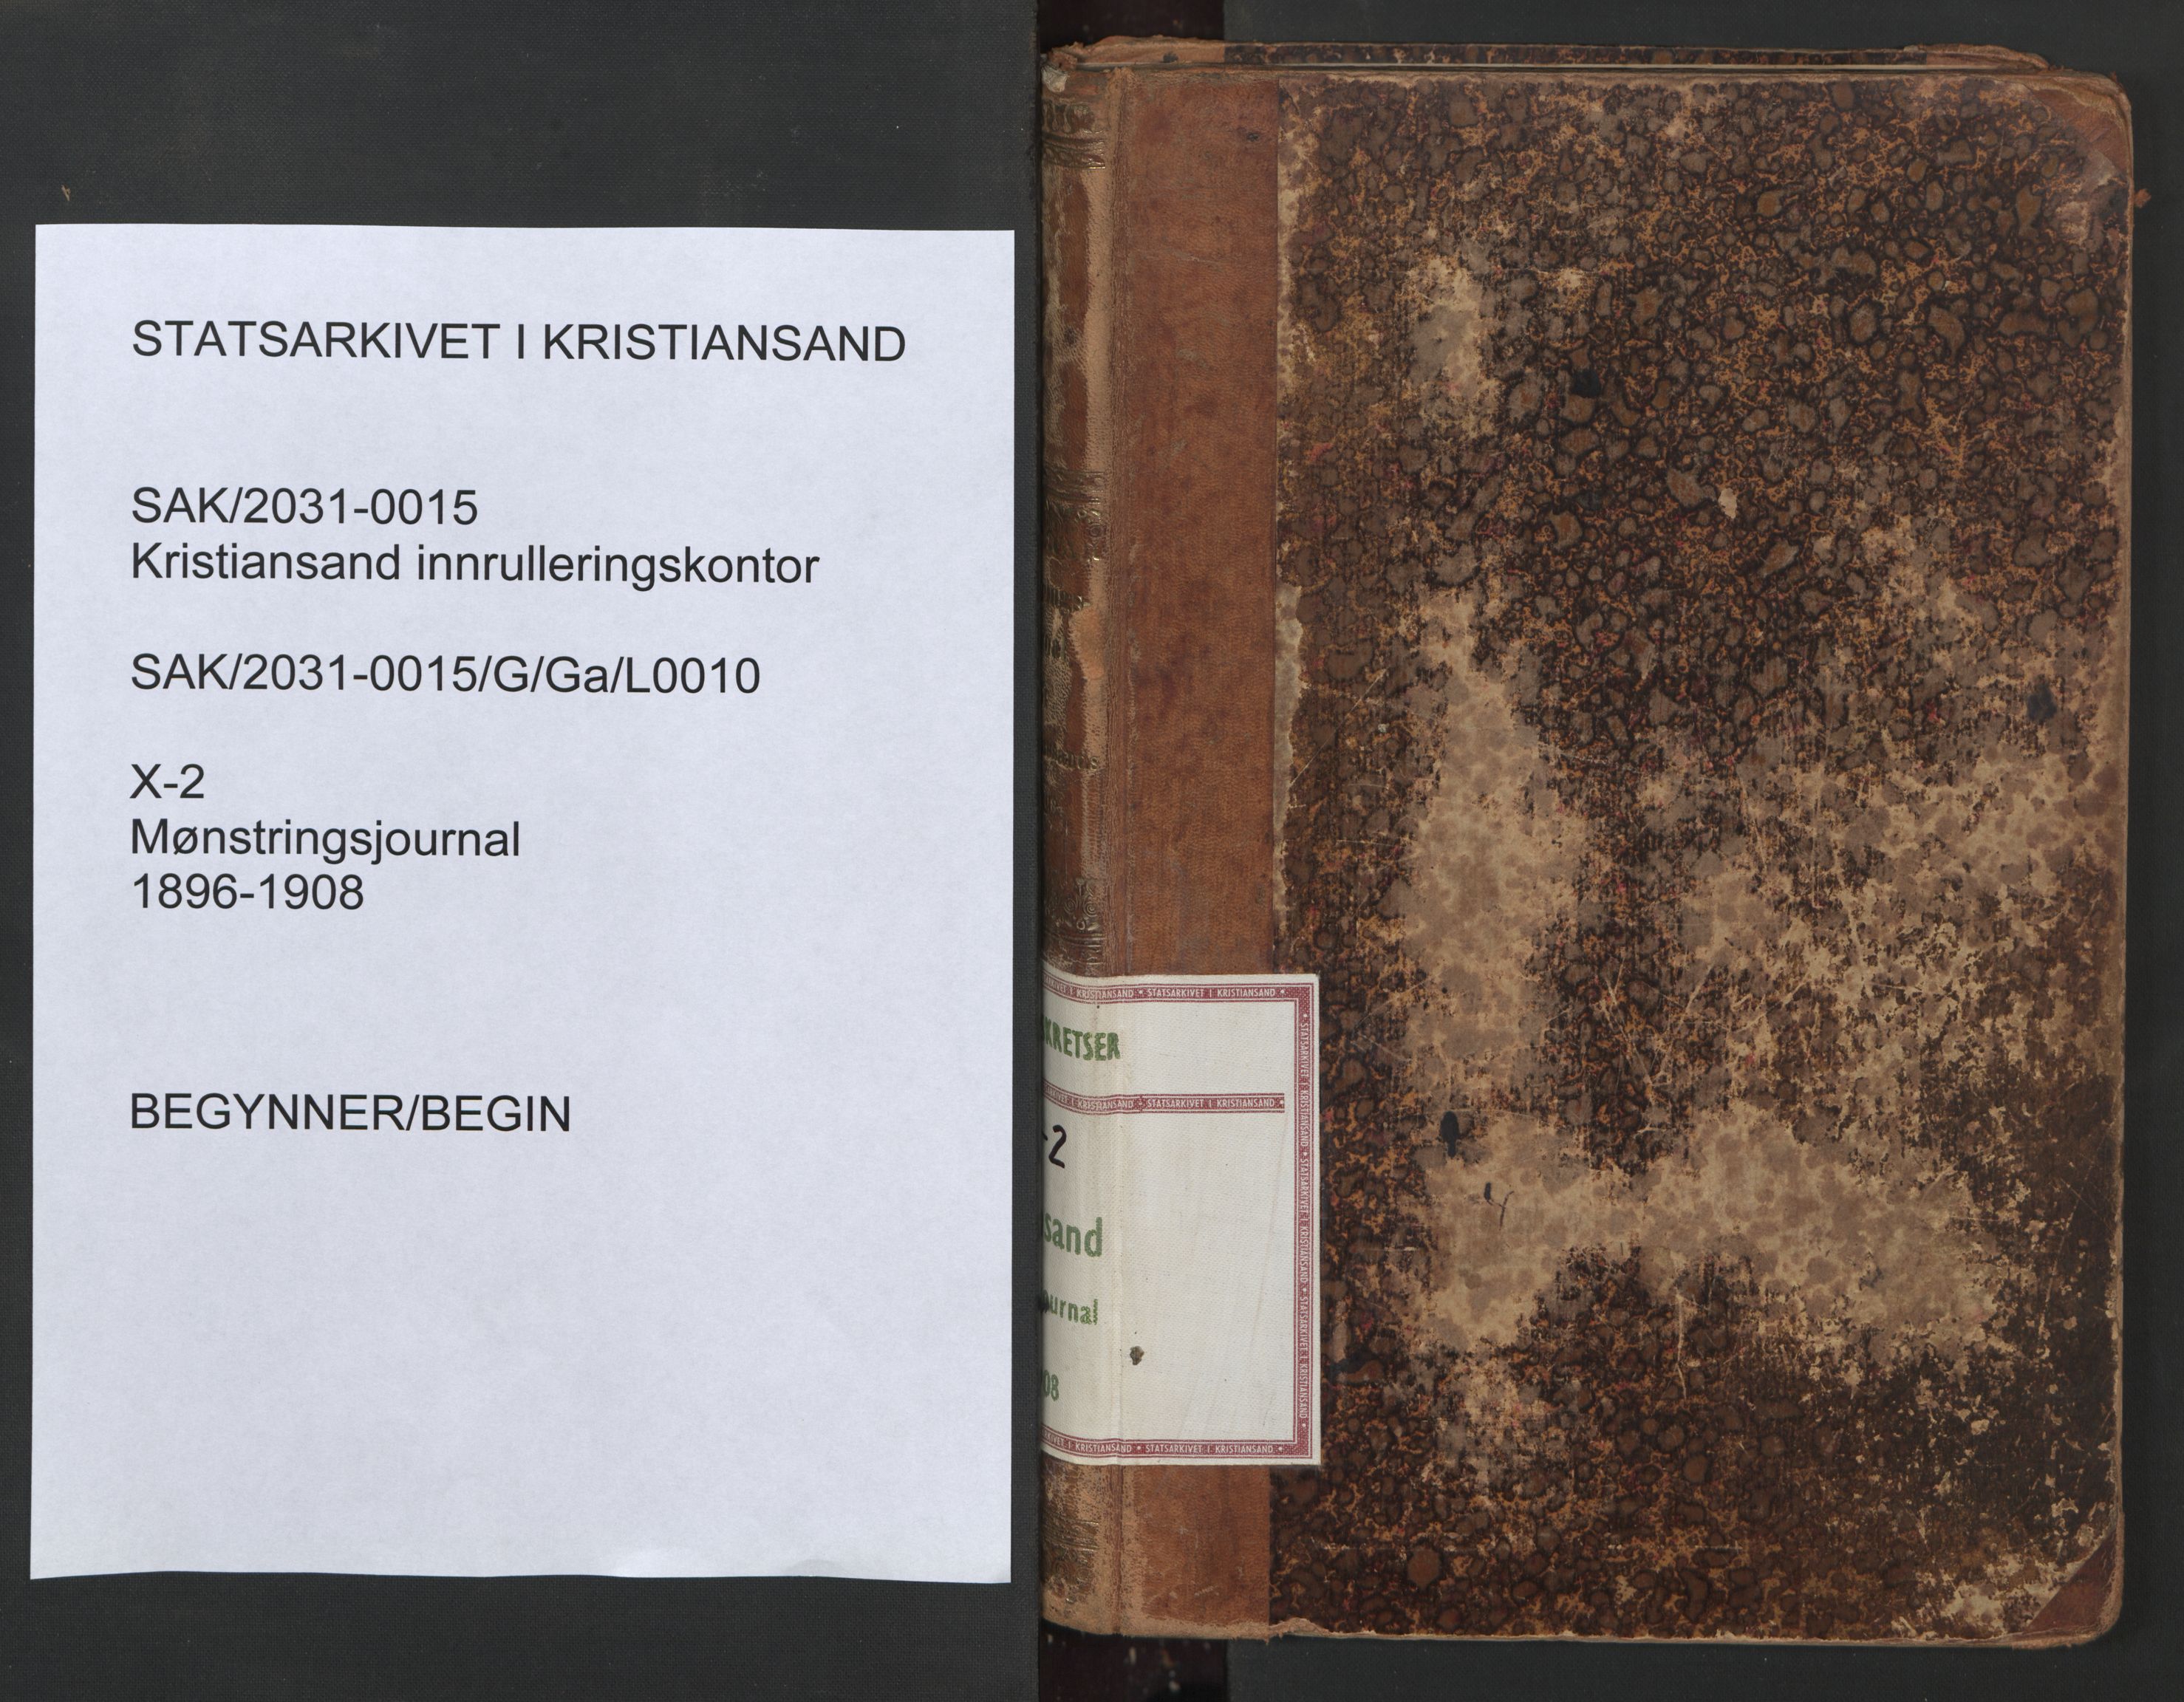 Kristiansand mønstringskrets, SAK/2031-0015/G/Ga/L0010: Mønstringsjournal, X-2, 1896-1908, p. 1